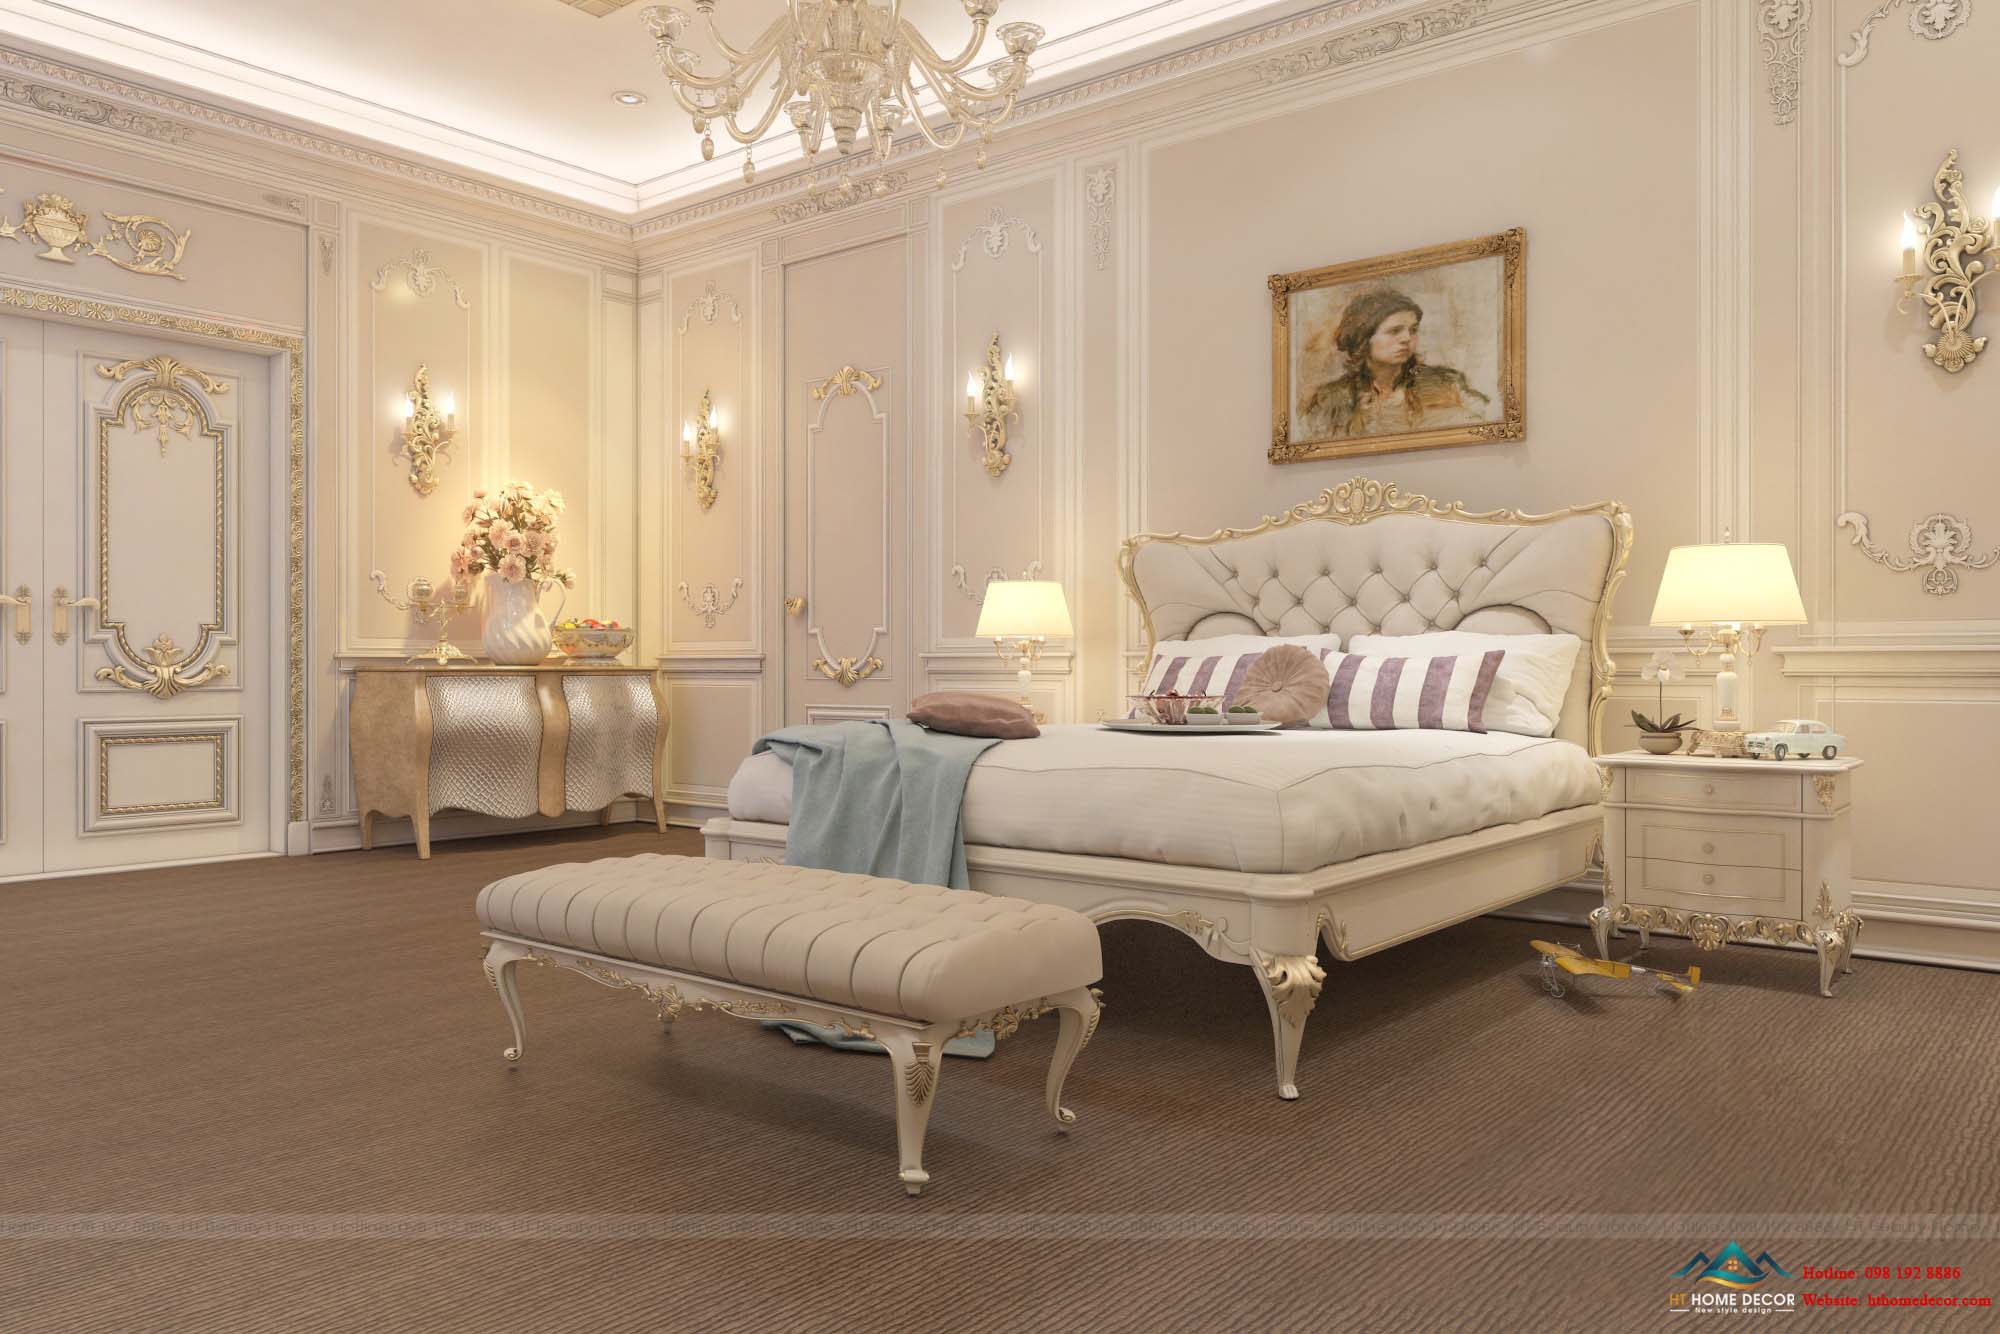 Mang đậm phong cách phương Tây khi lựa chọn gam màu trắng được viền màu vàng đồng cho phòng ngủ. 